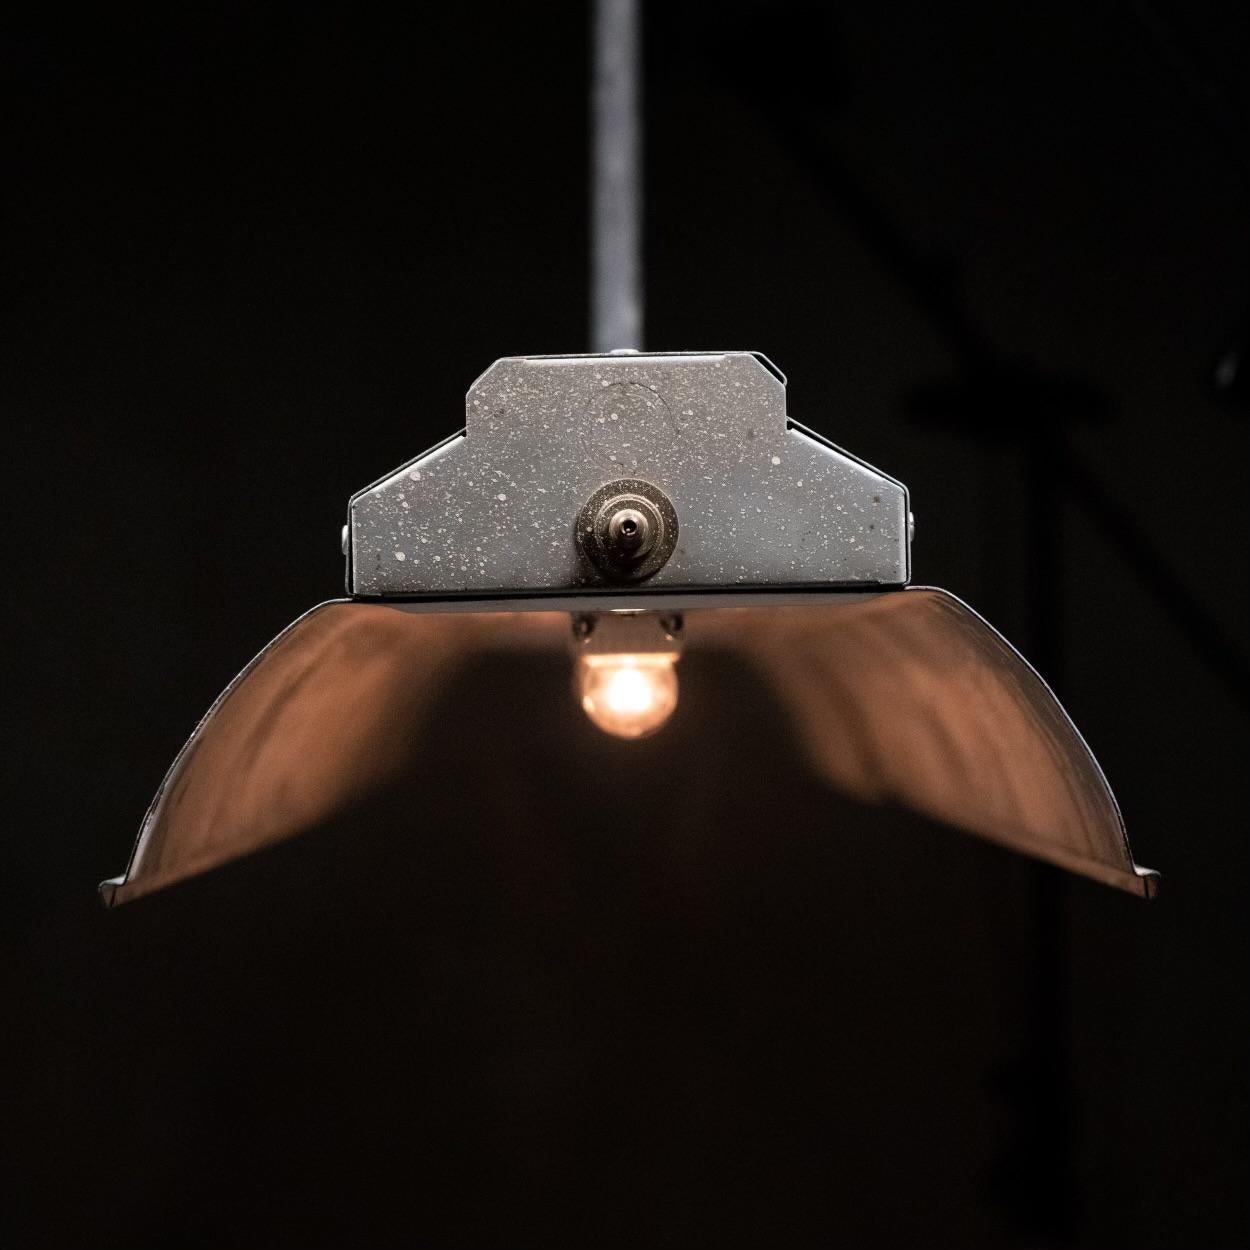 Eine sehr schöne restaurierte Emaille-Leuchte in voller Länge von 8 Fuß, die von Leuchtstoffröhren auf  Glühbirnen, die je nach Wahl der Glühbirne eine einfache Beleuchtung oder eine Aufgabenbeleuchtung ermöglichen.

Gefunden in einem historischen